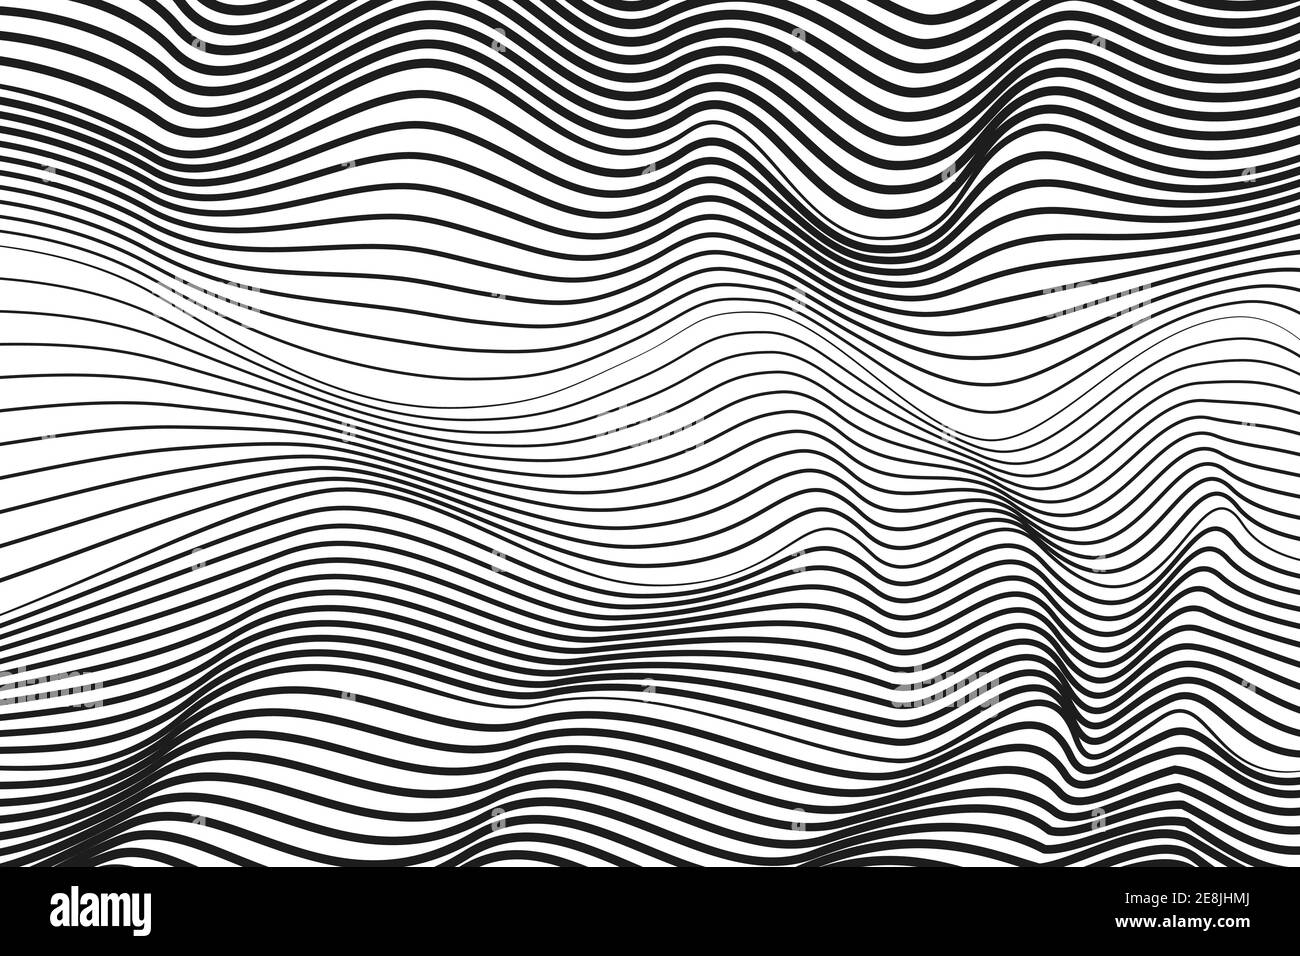 Lignes ondulantes noires, concept techno. Motif abstrait rayé. Arrière-plan blanc. Motif vectoriel op art. Radio, ondes sonores. Illusion optique. EPS10 Illustration de Vecteur